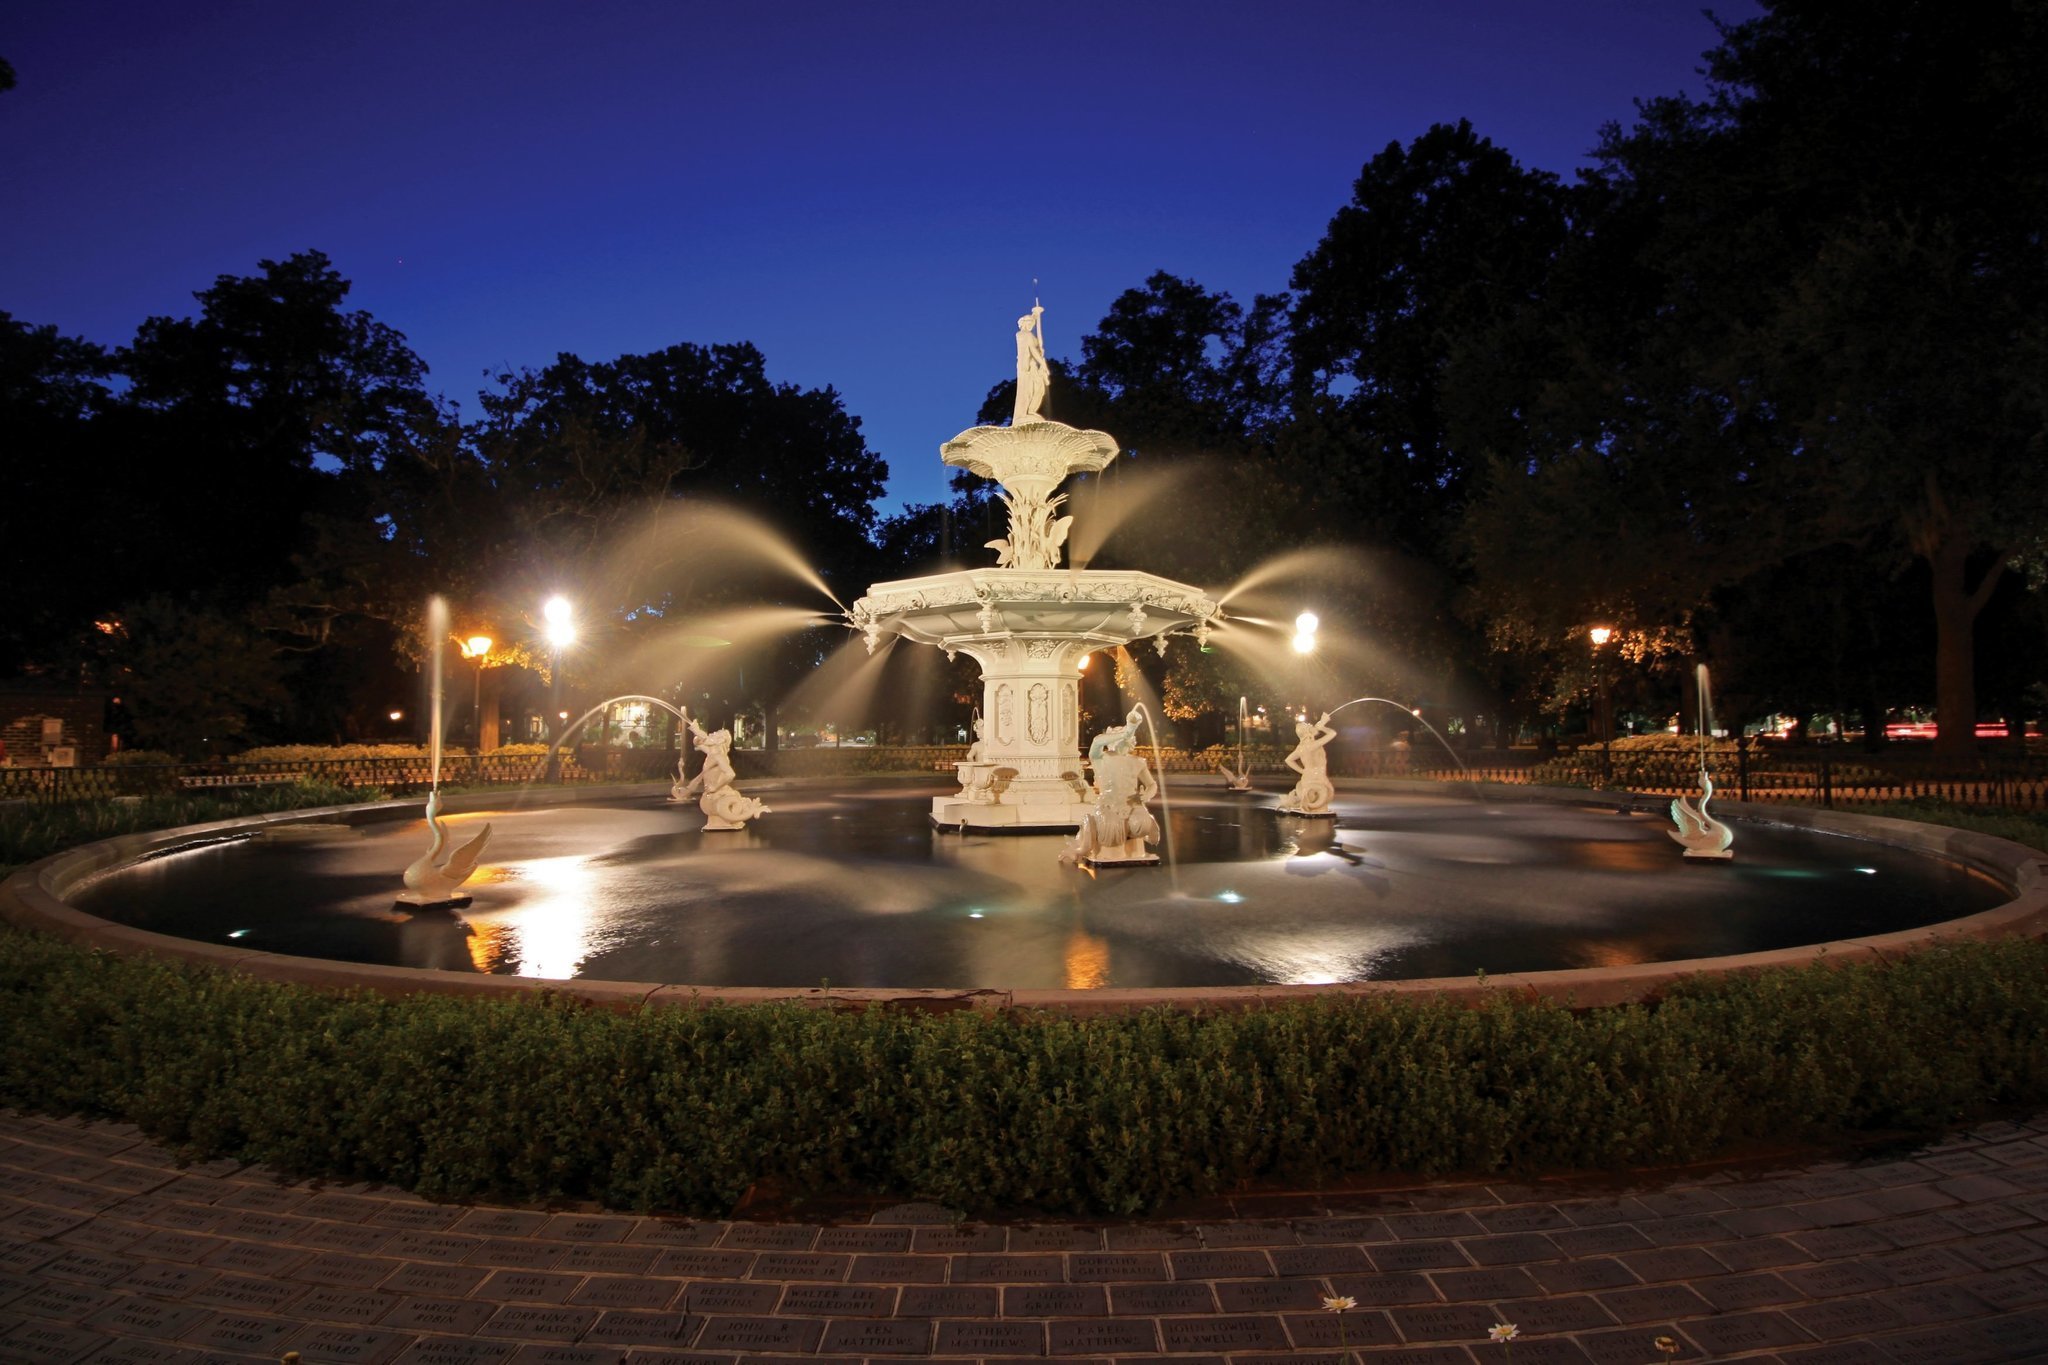 LuxeGetaways - Luxury Travel - Luxury Travel Magazine - Savannah Tourism - Fountain